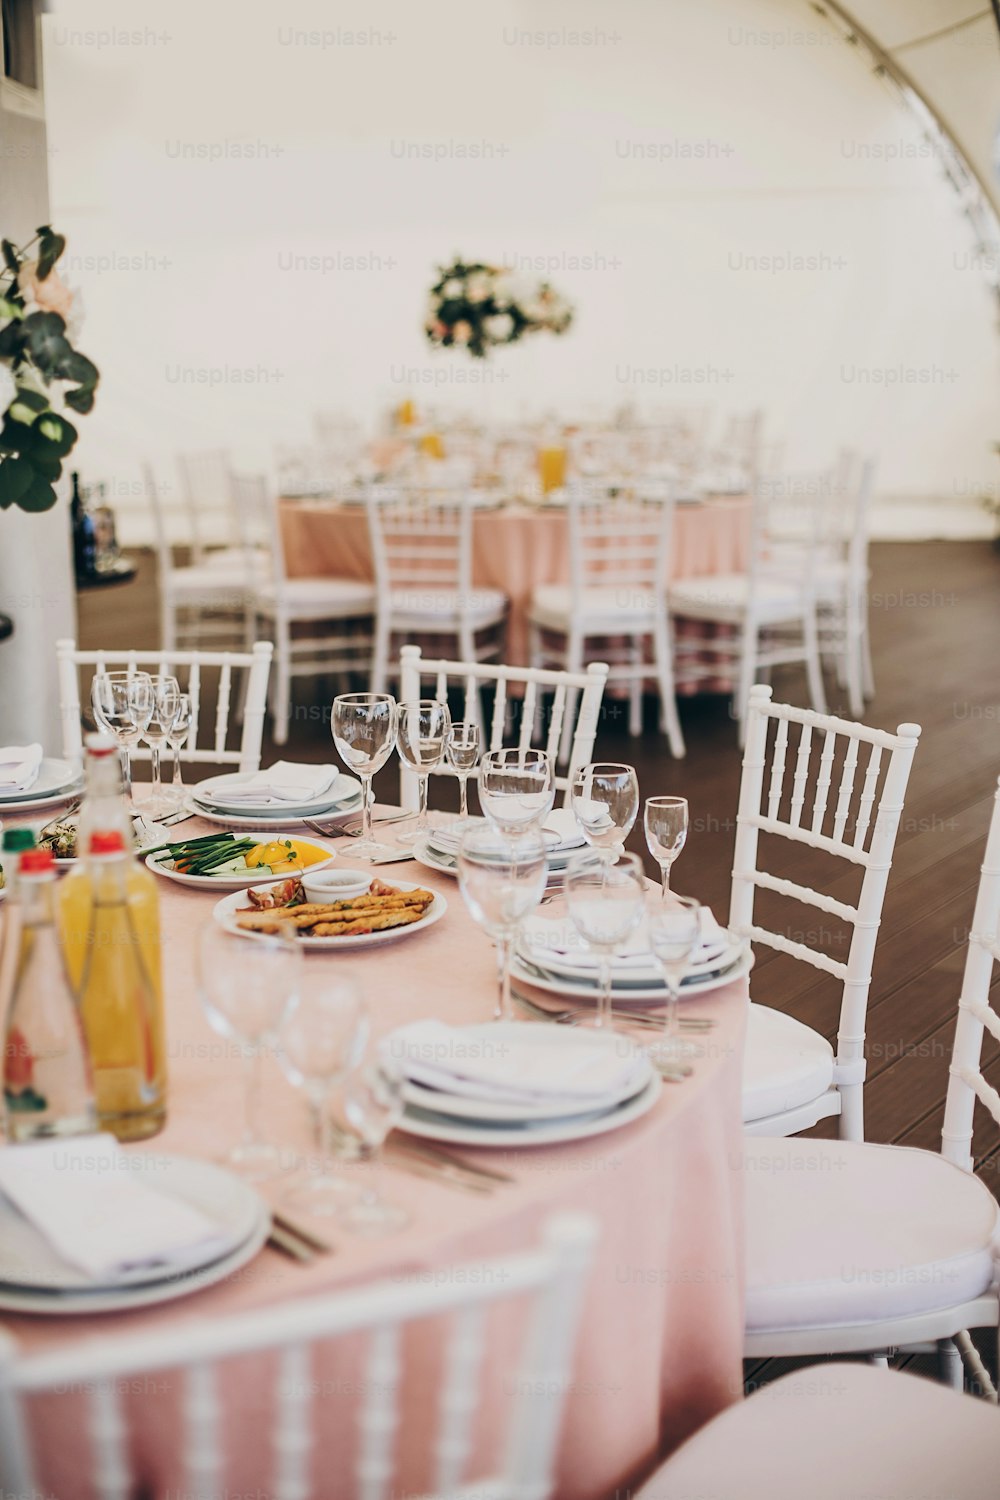 レストランでの結婚披露宴で、シルバーのカトラリー、ワイングラス、空のプレート、ピンクの布においしい料理を添えたスタイリッシュなピンクのセンターピース。贅沢なケータリング